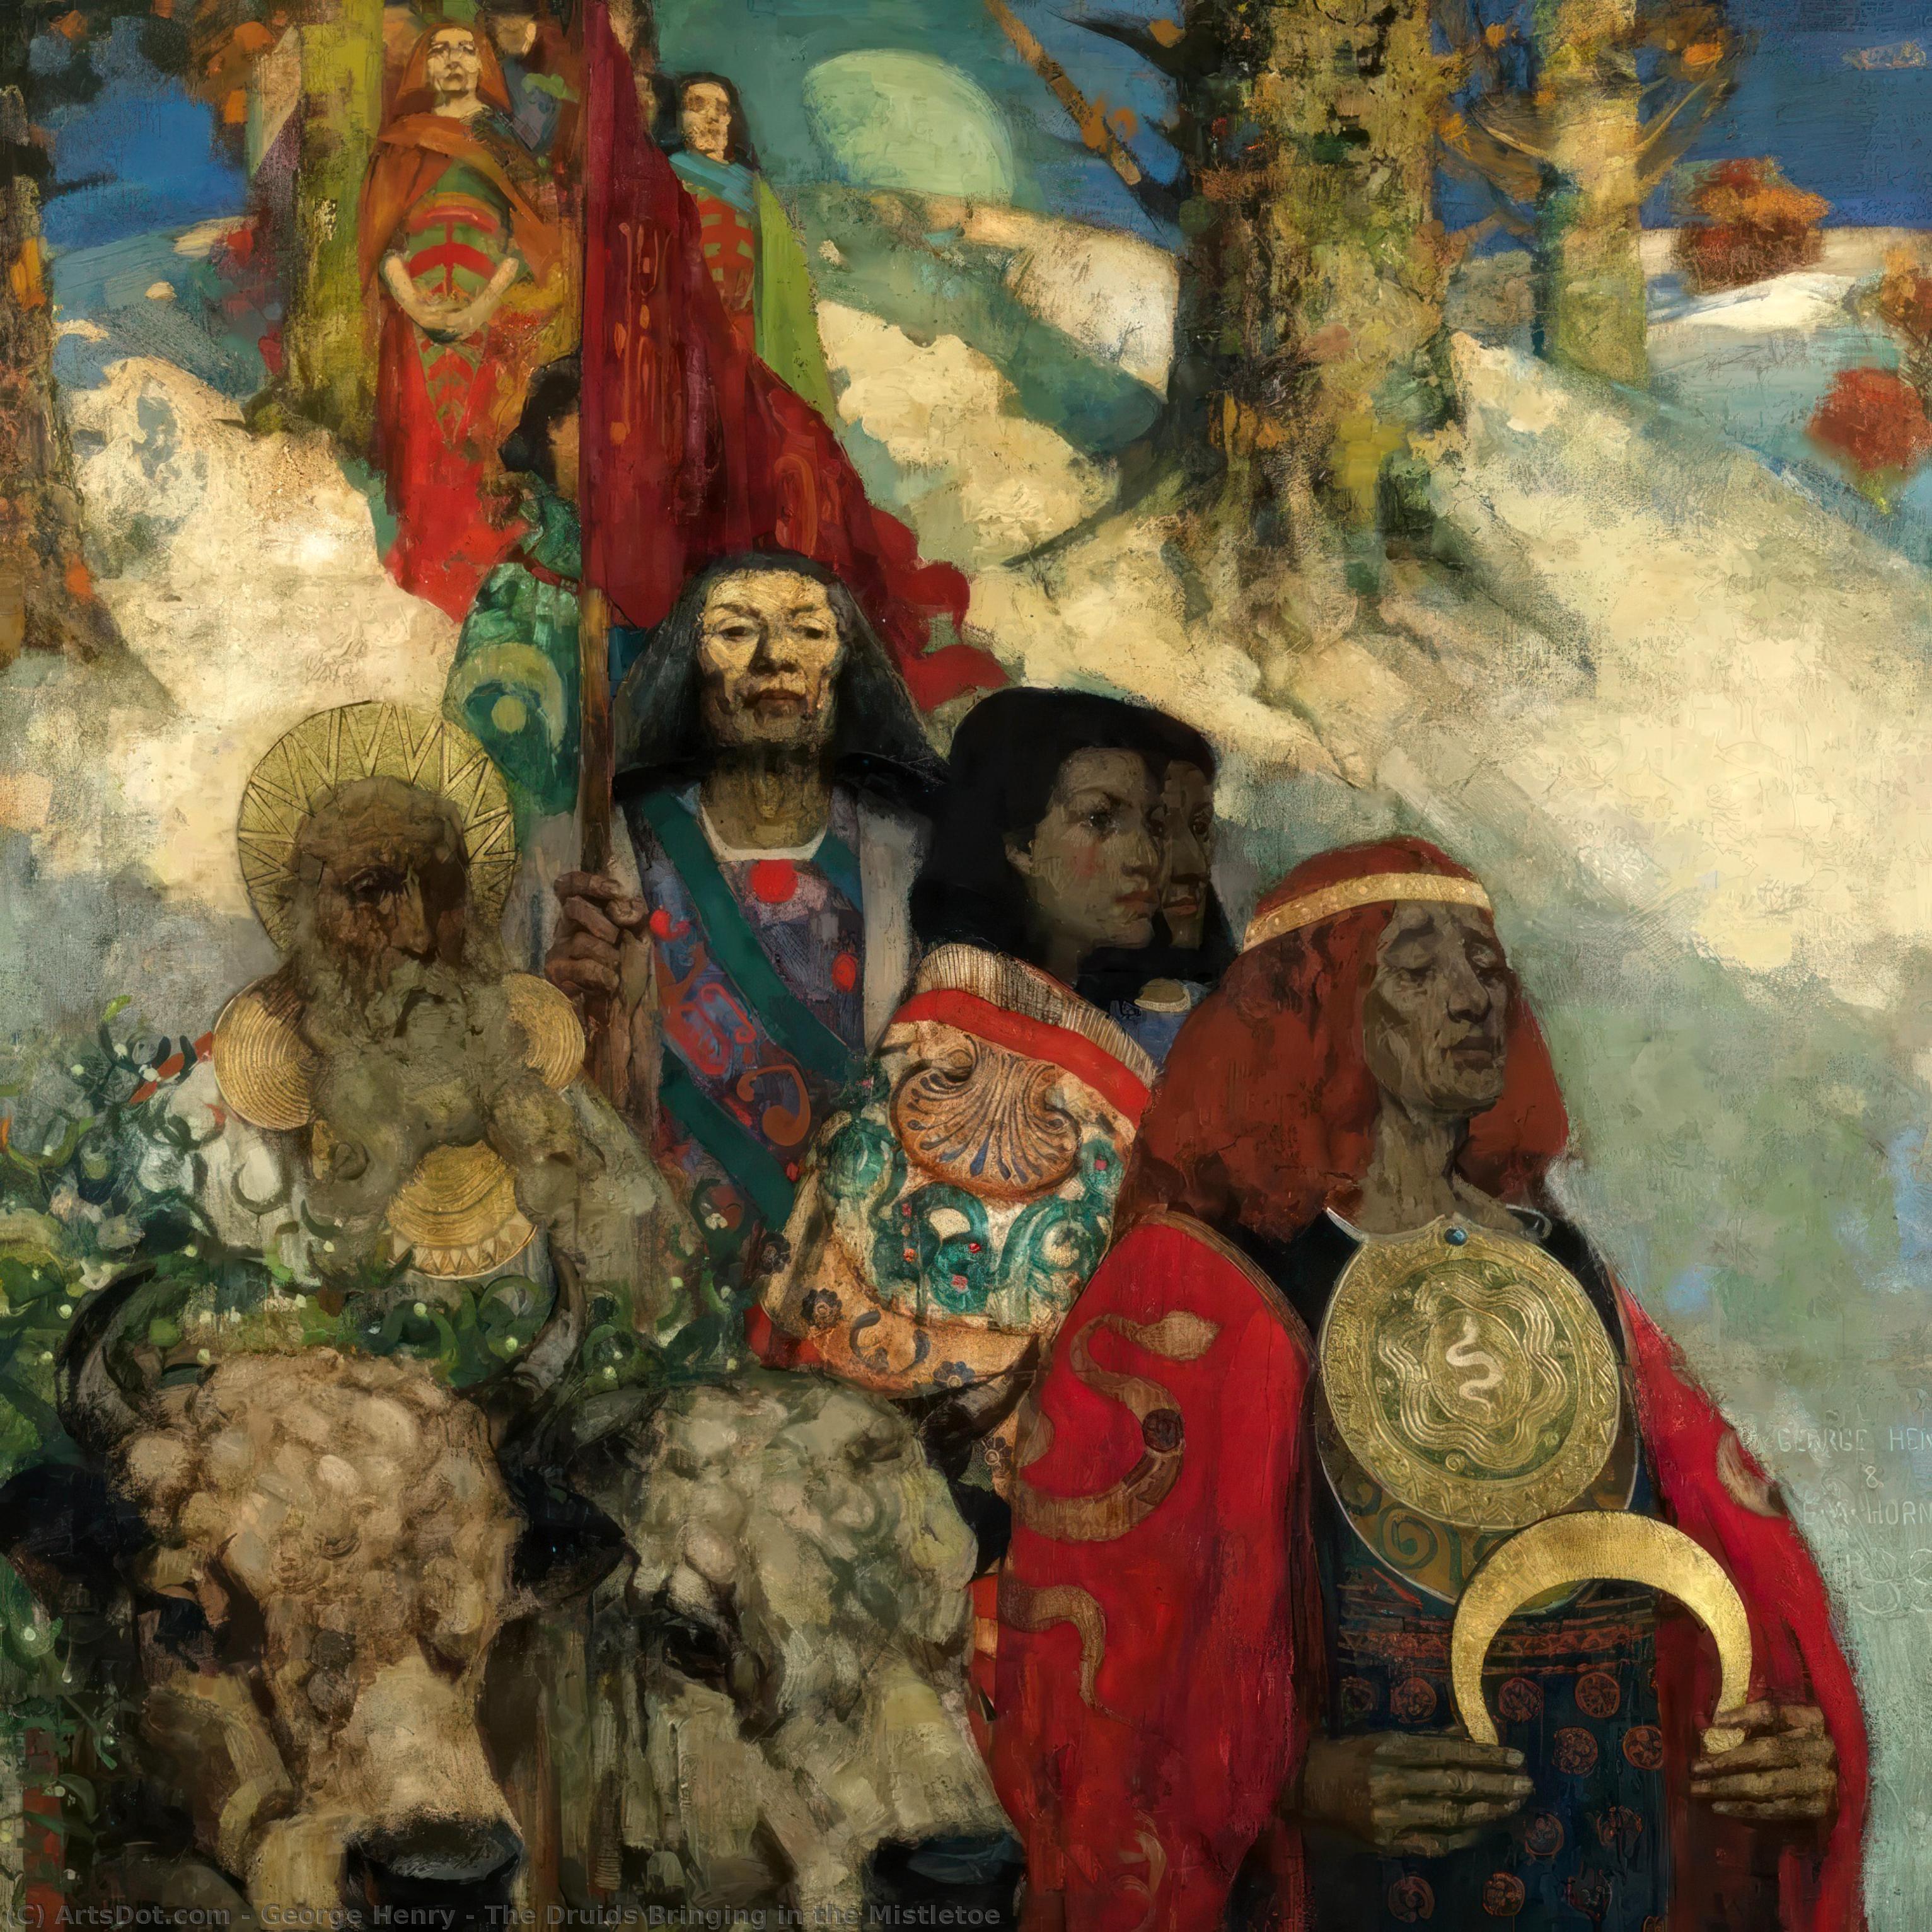 Compra Riproduzioni D'arte Del Museo I druidi che portano nel Mistletoe, 1890 di George Henry (1828-1895) | ArtsDot.com